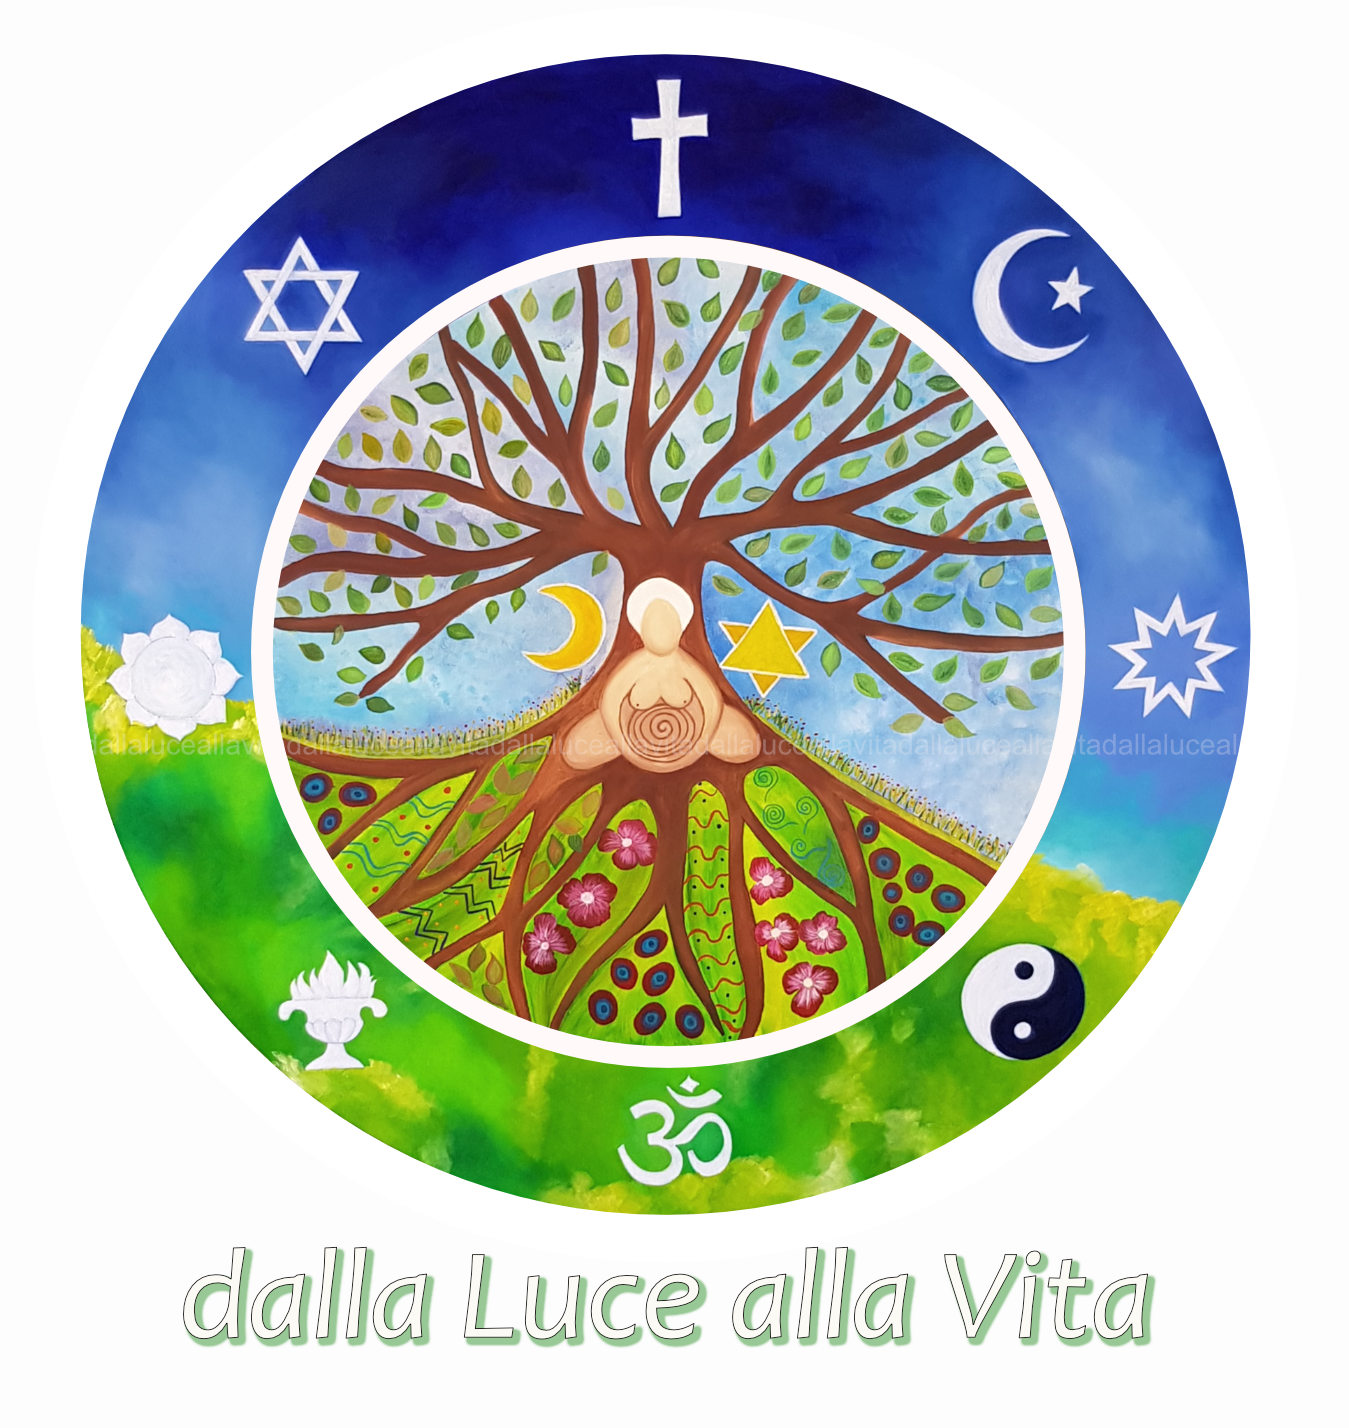 Coscienza Universale, Pace Ecumenica, Creatività, Guarigione e realizzazione dell'Anima